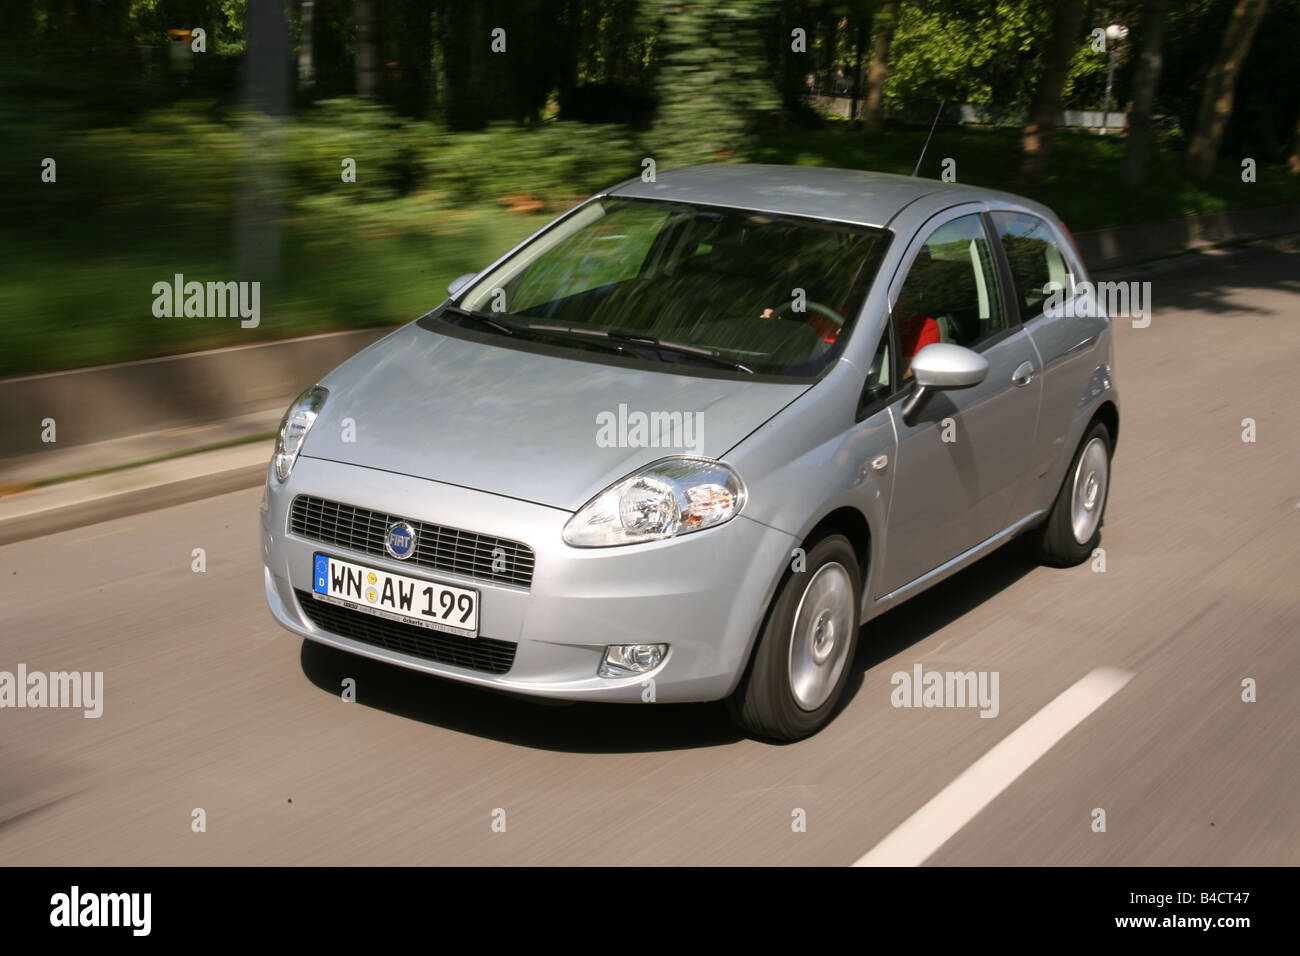 Fiat Grande Punto 1.4 8V, Modell Jahr 2006-Silber, fahren, schräg von  vorne, Vorderansicht, Landstraße Stockfotografie - Alamy